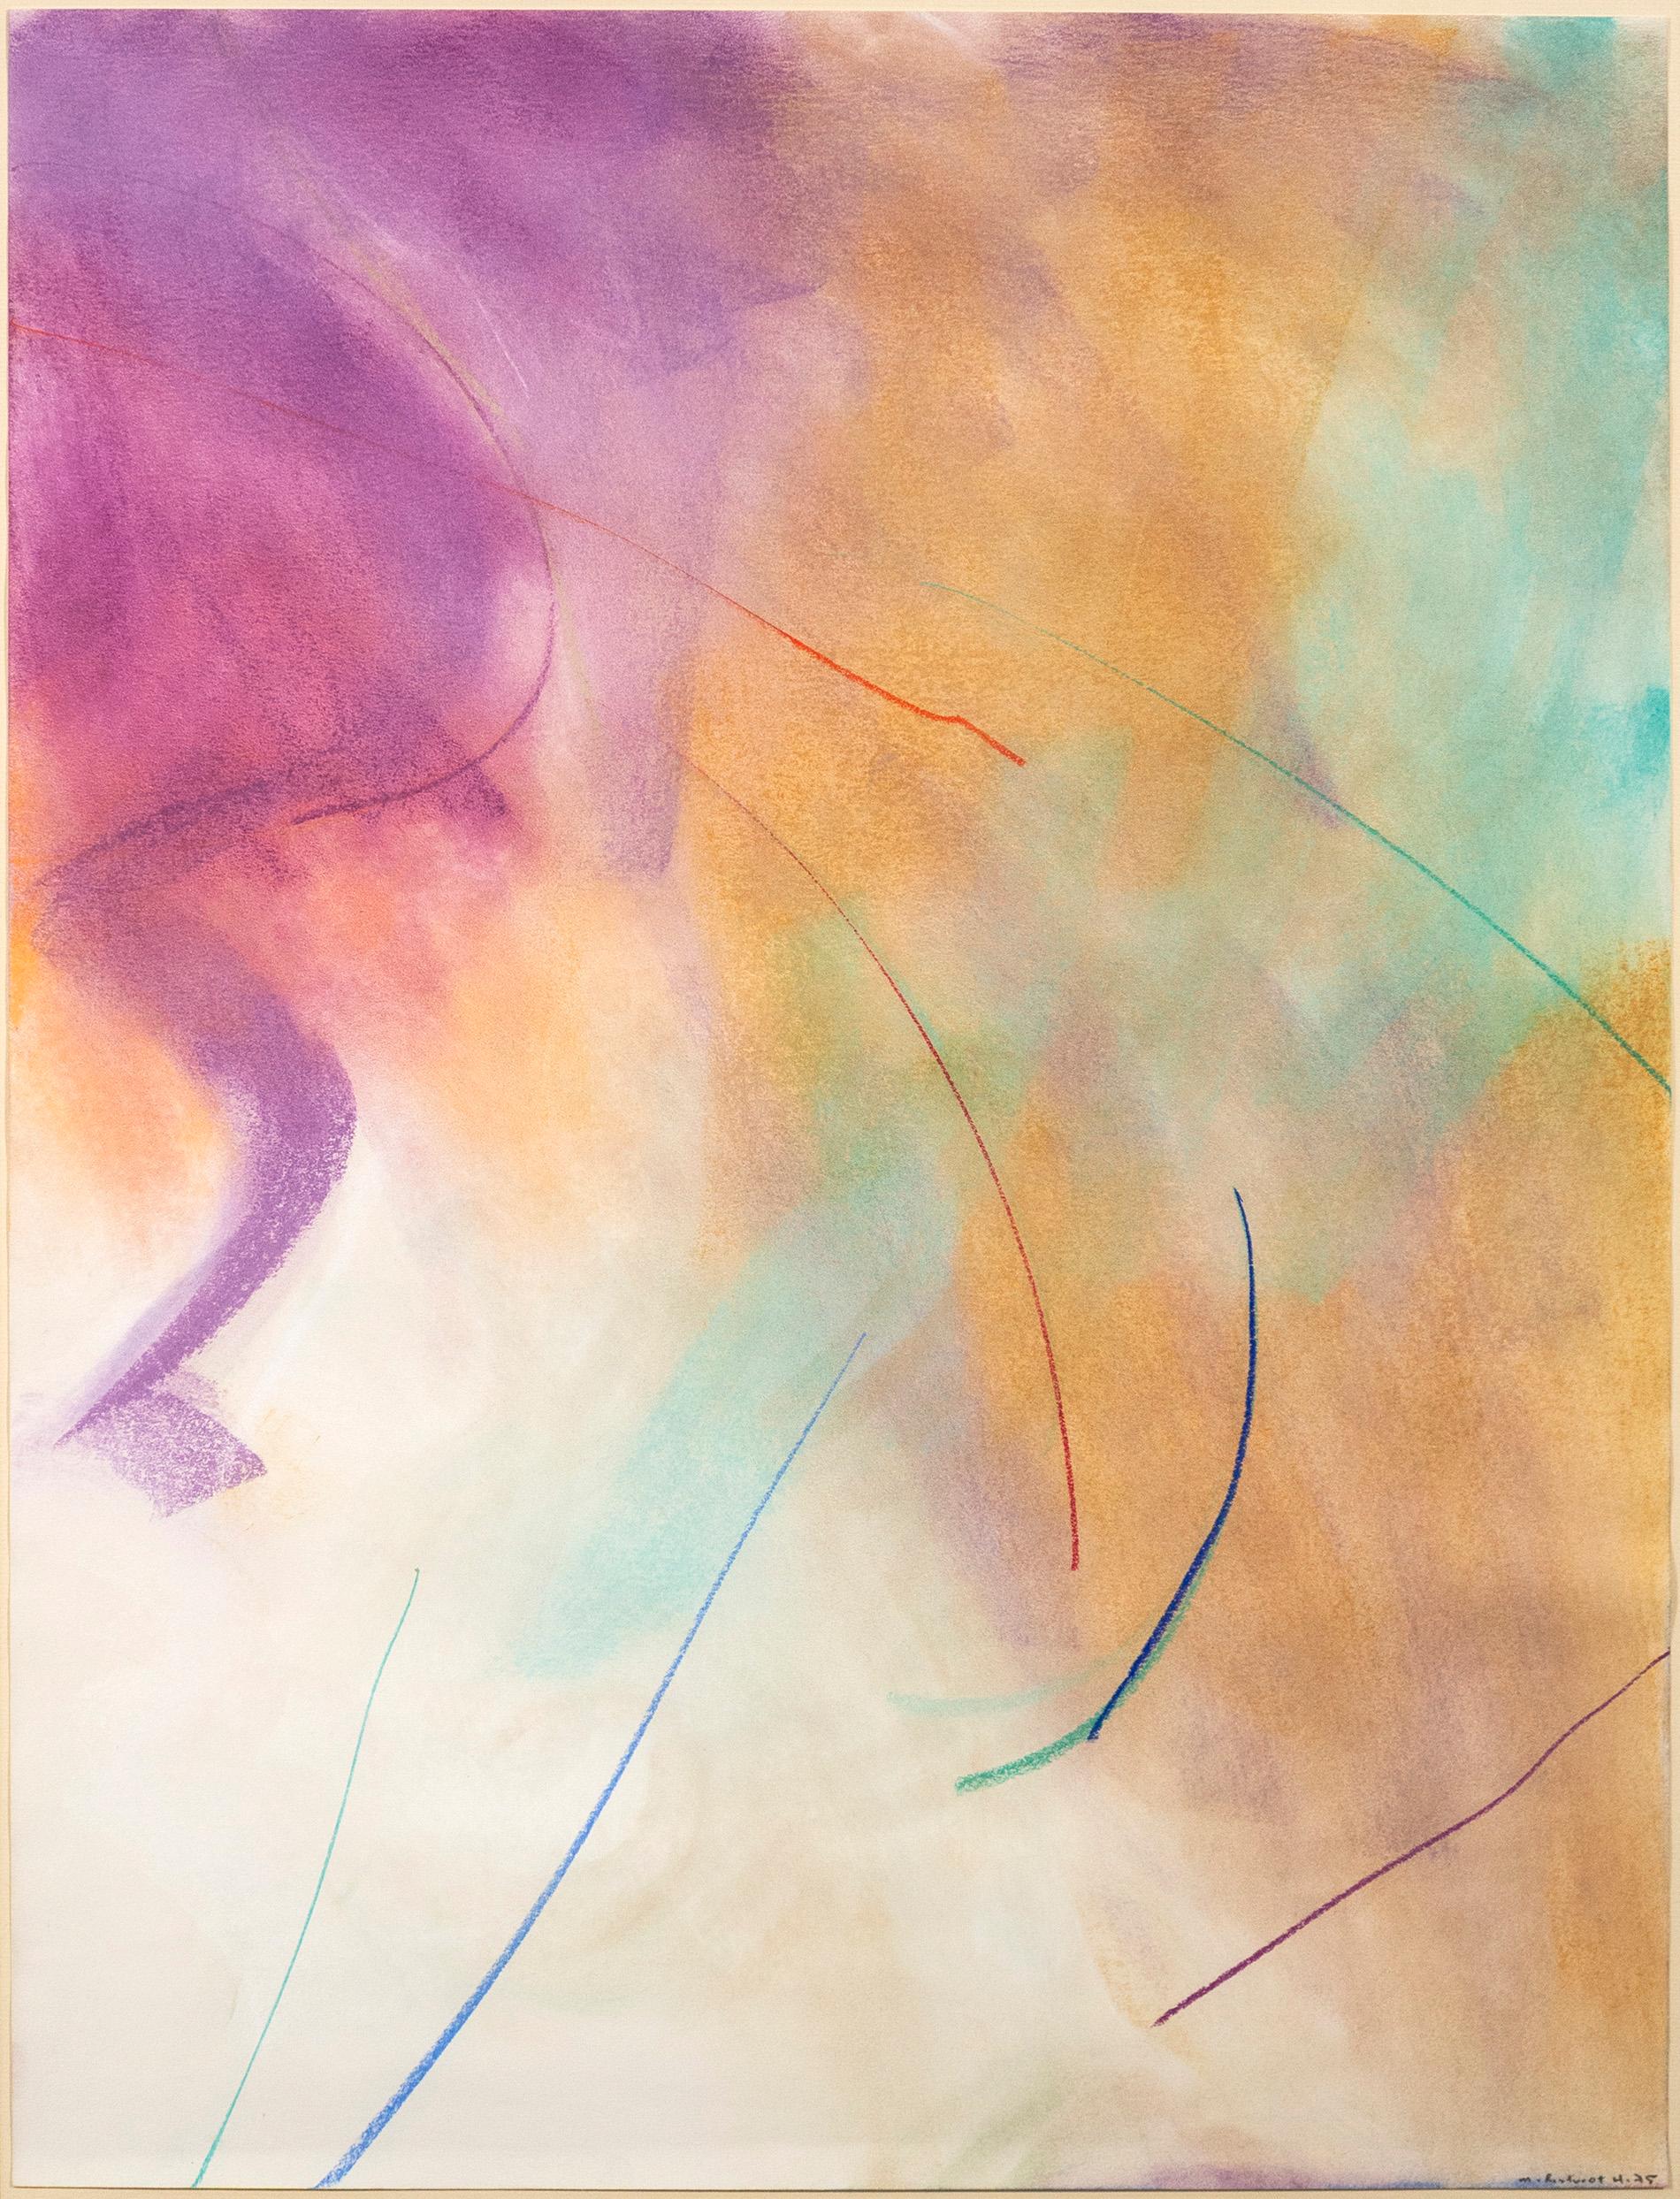 Dieses ätherische abstrakte Pastell auf Papier ist ein Frühwerk von Milly Ritsvedt, die als eine der führenden abstrakten Künstlerinnen Kanadas bekannt ist. Sanfte Wolken aus Magenta, Siena und Türkis schweben in diesem ausdrucksstarken Werk über